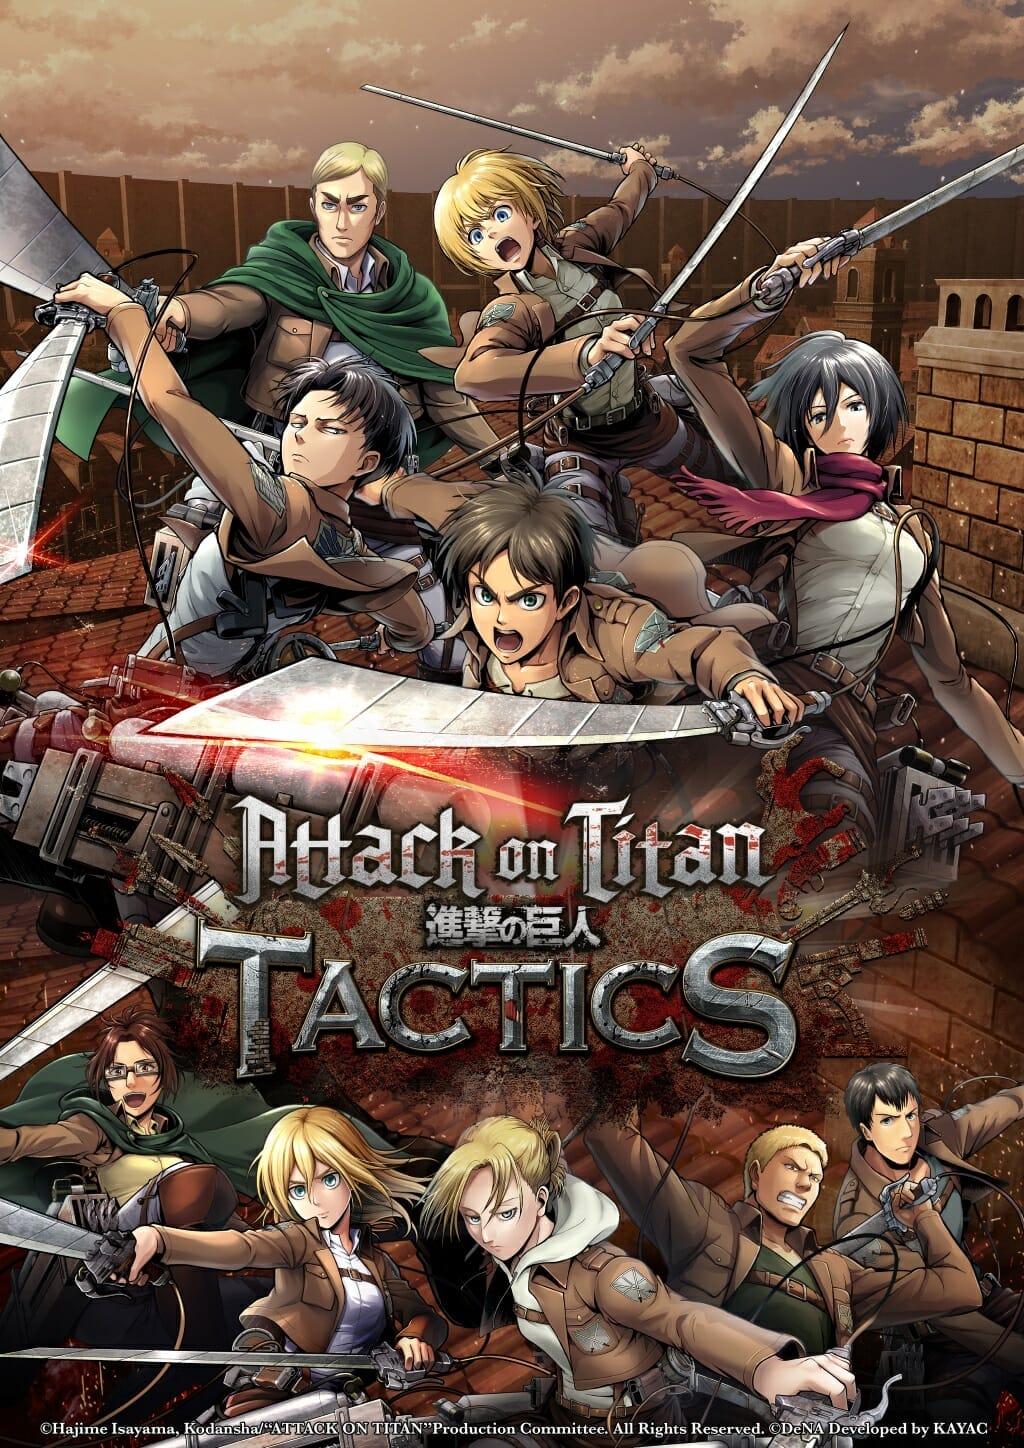 attack on titan games pc